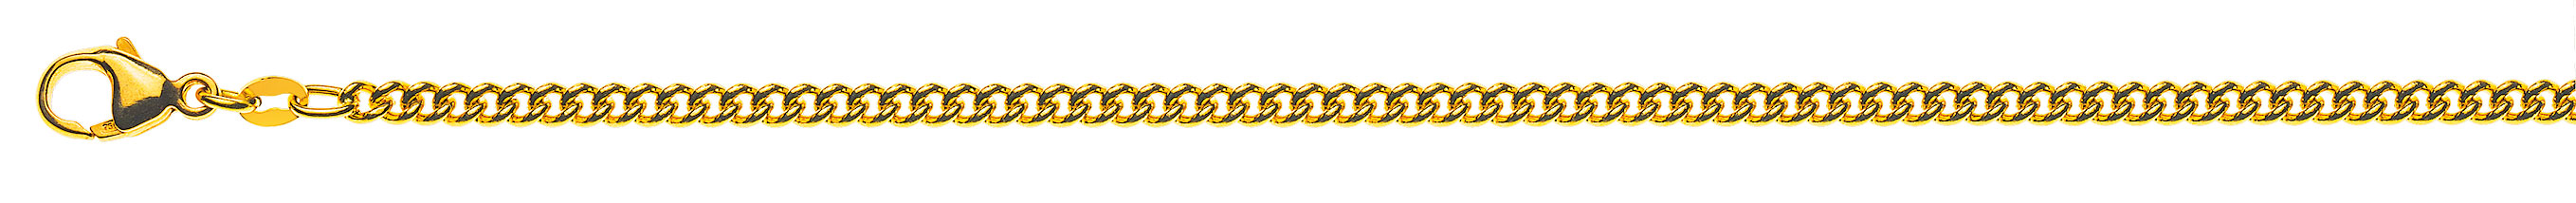 AURONOS Prestige Halskette Gelbgold 18K Rundpanzerkette 55cm 2.8mm